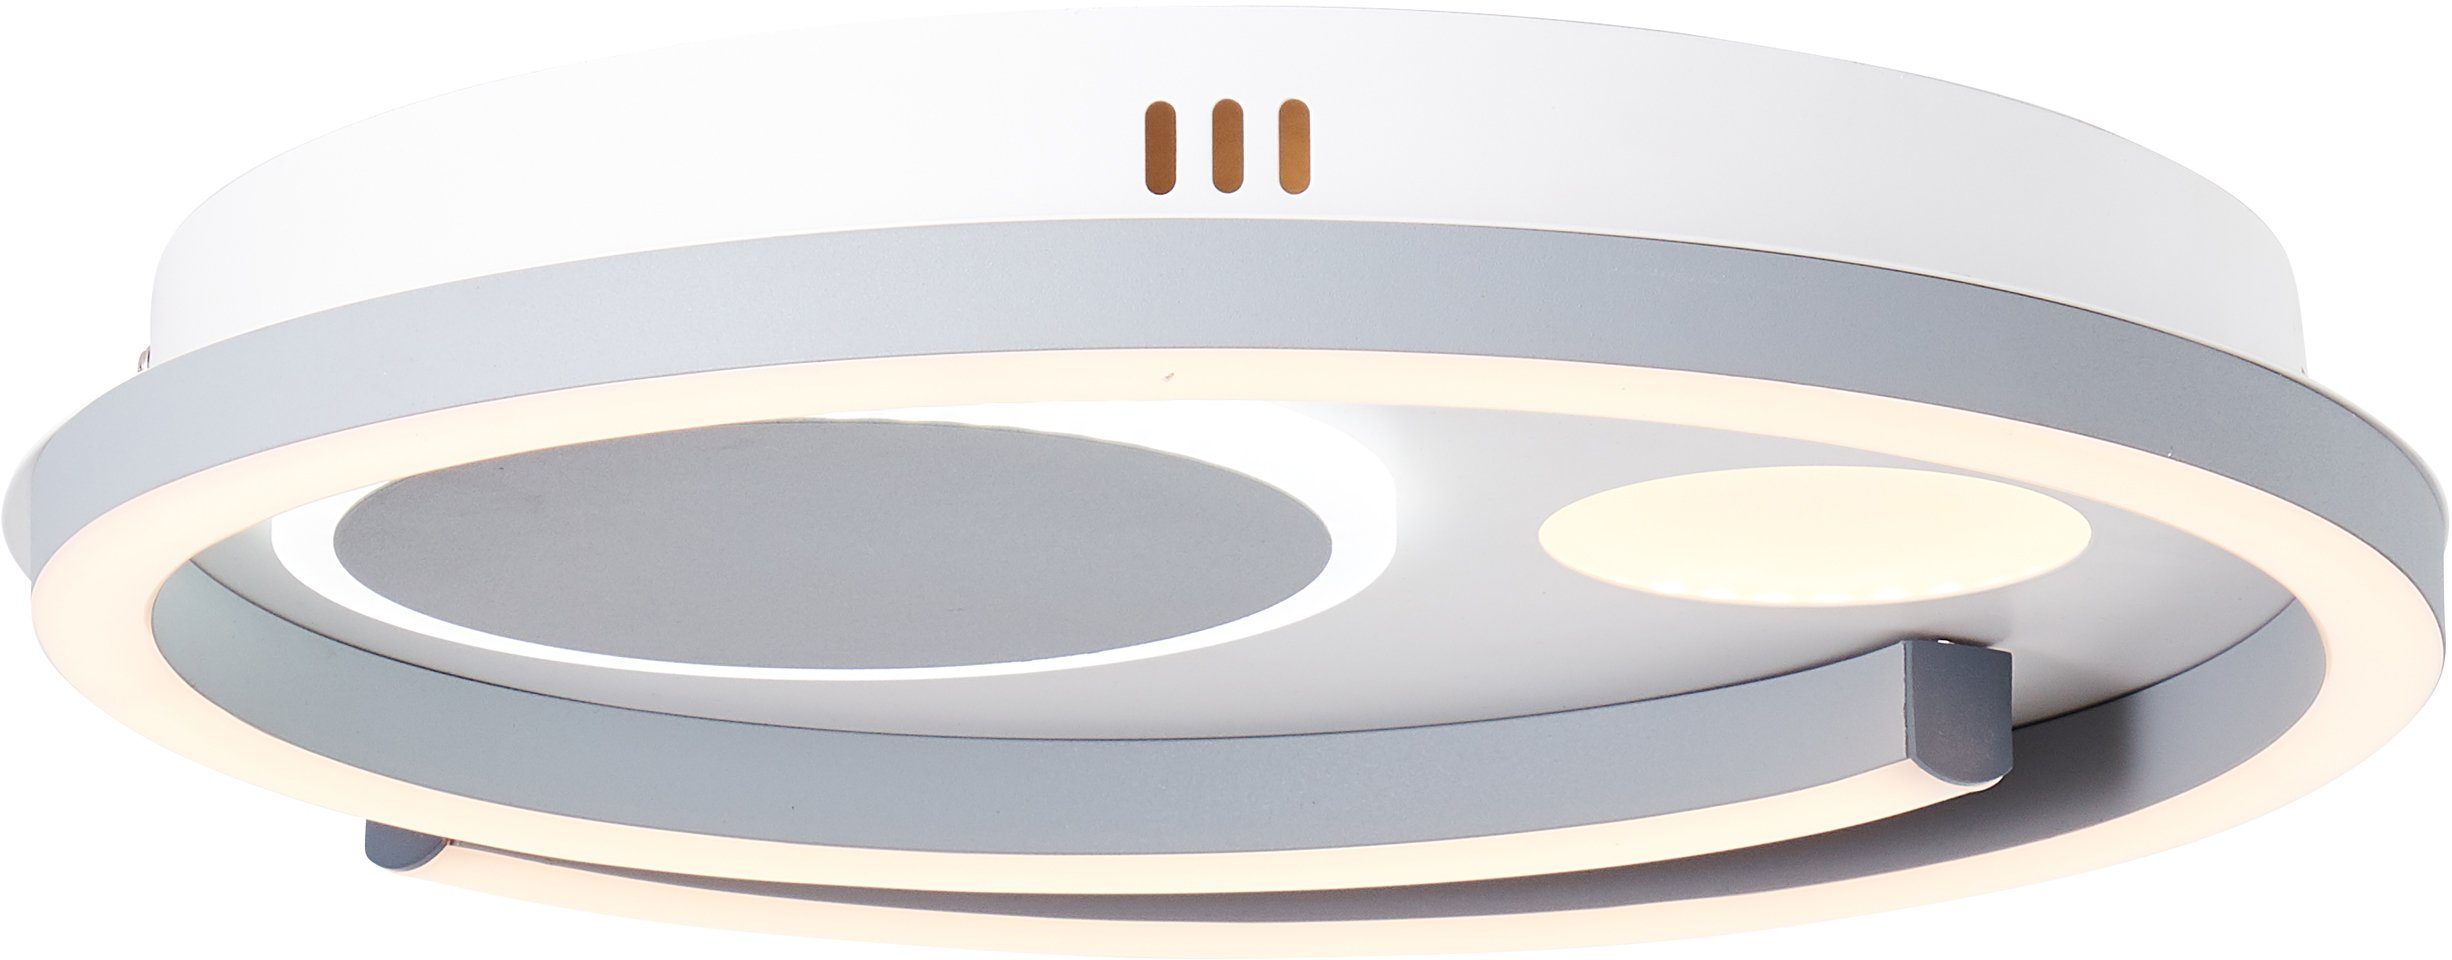 Brilliant Deckenleuchte Thekla, 3000-6000K, Lampe, Thekla LED Deckenleuchte  40x40cm weiß/schwarz, 1x LED integrier